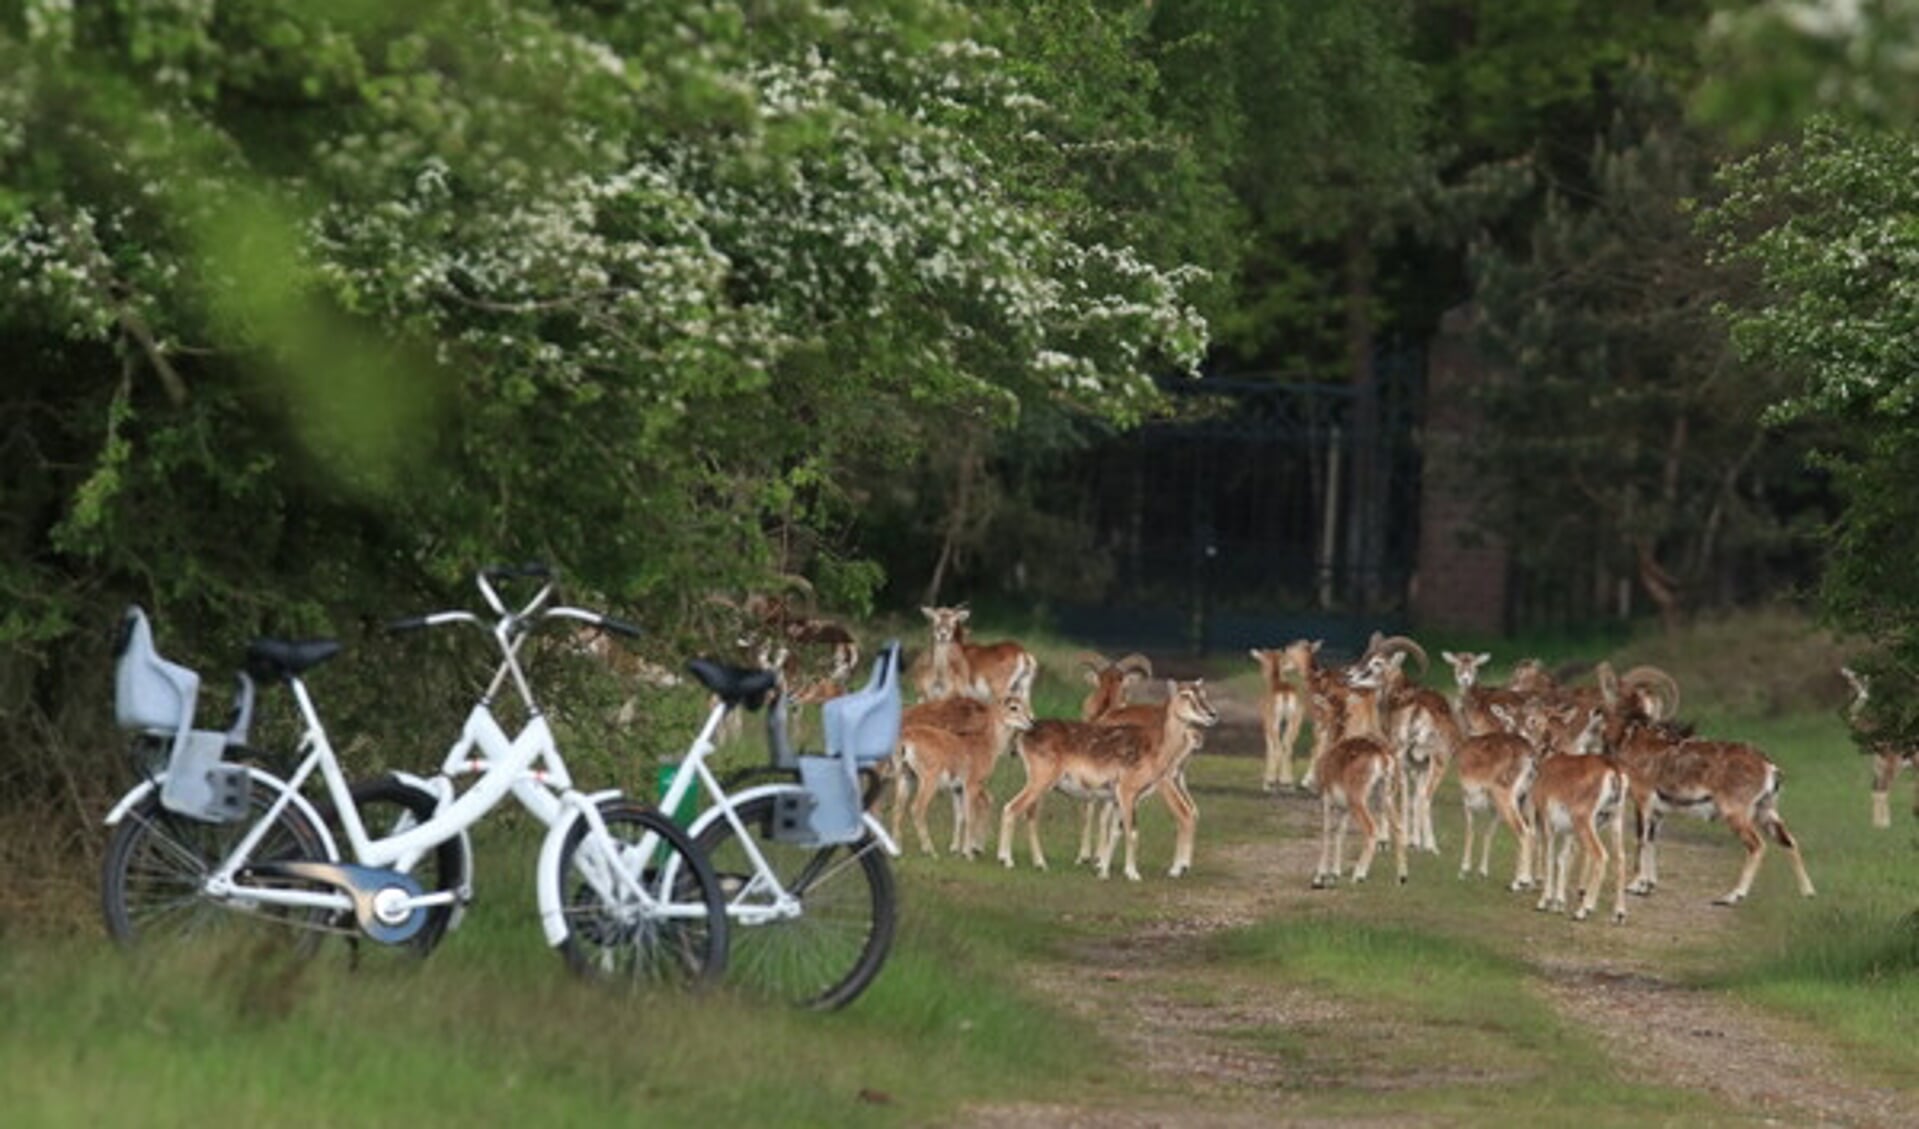 Het Nationale Park De Hoge Veluwe is open! Een heerlijk uitje voor een bijzondere wandeling of fietstocht.